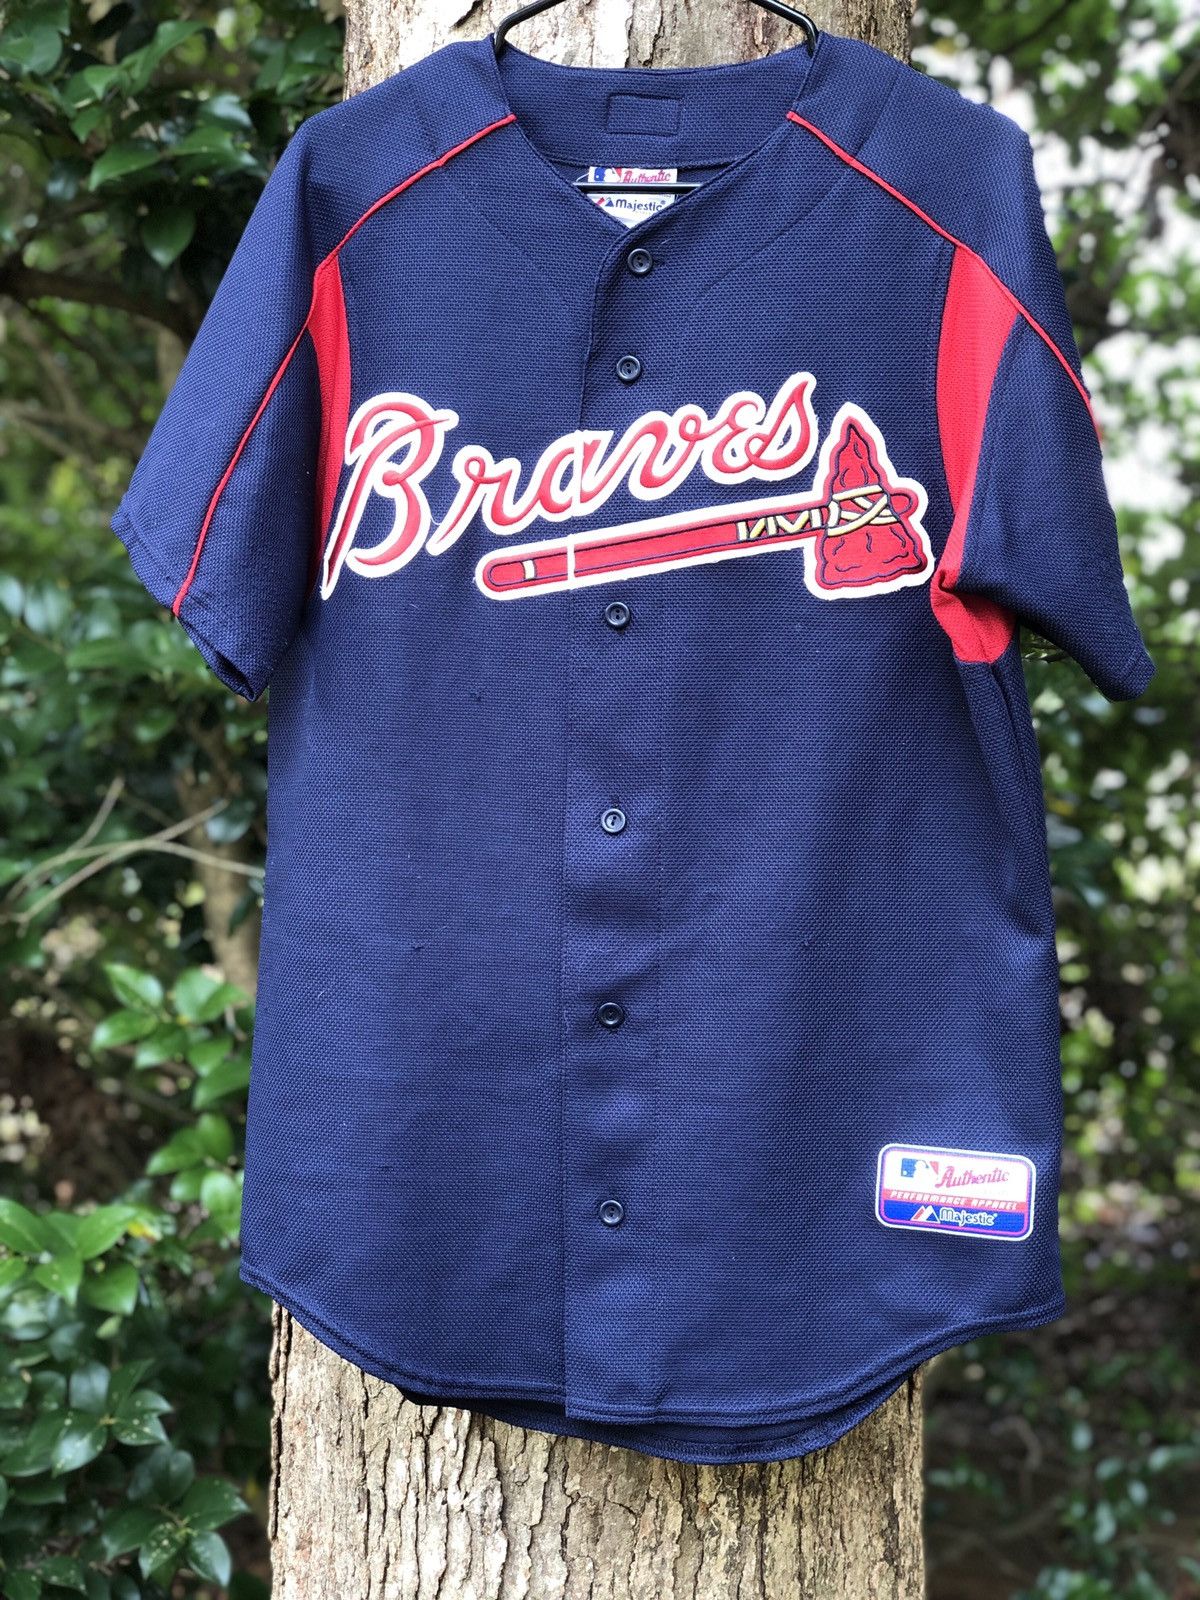 Vintage 90s Atlanta Braves Button up Jersey Majestic MLB 